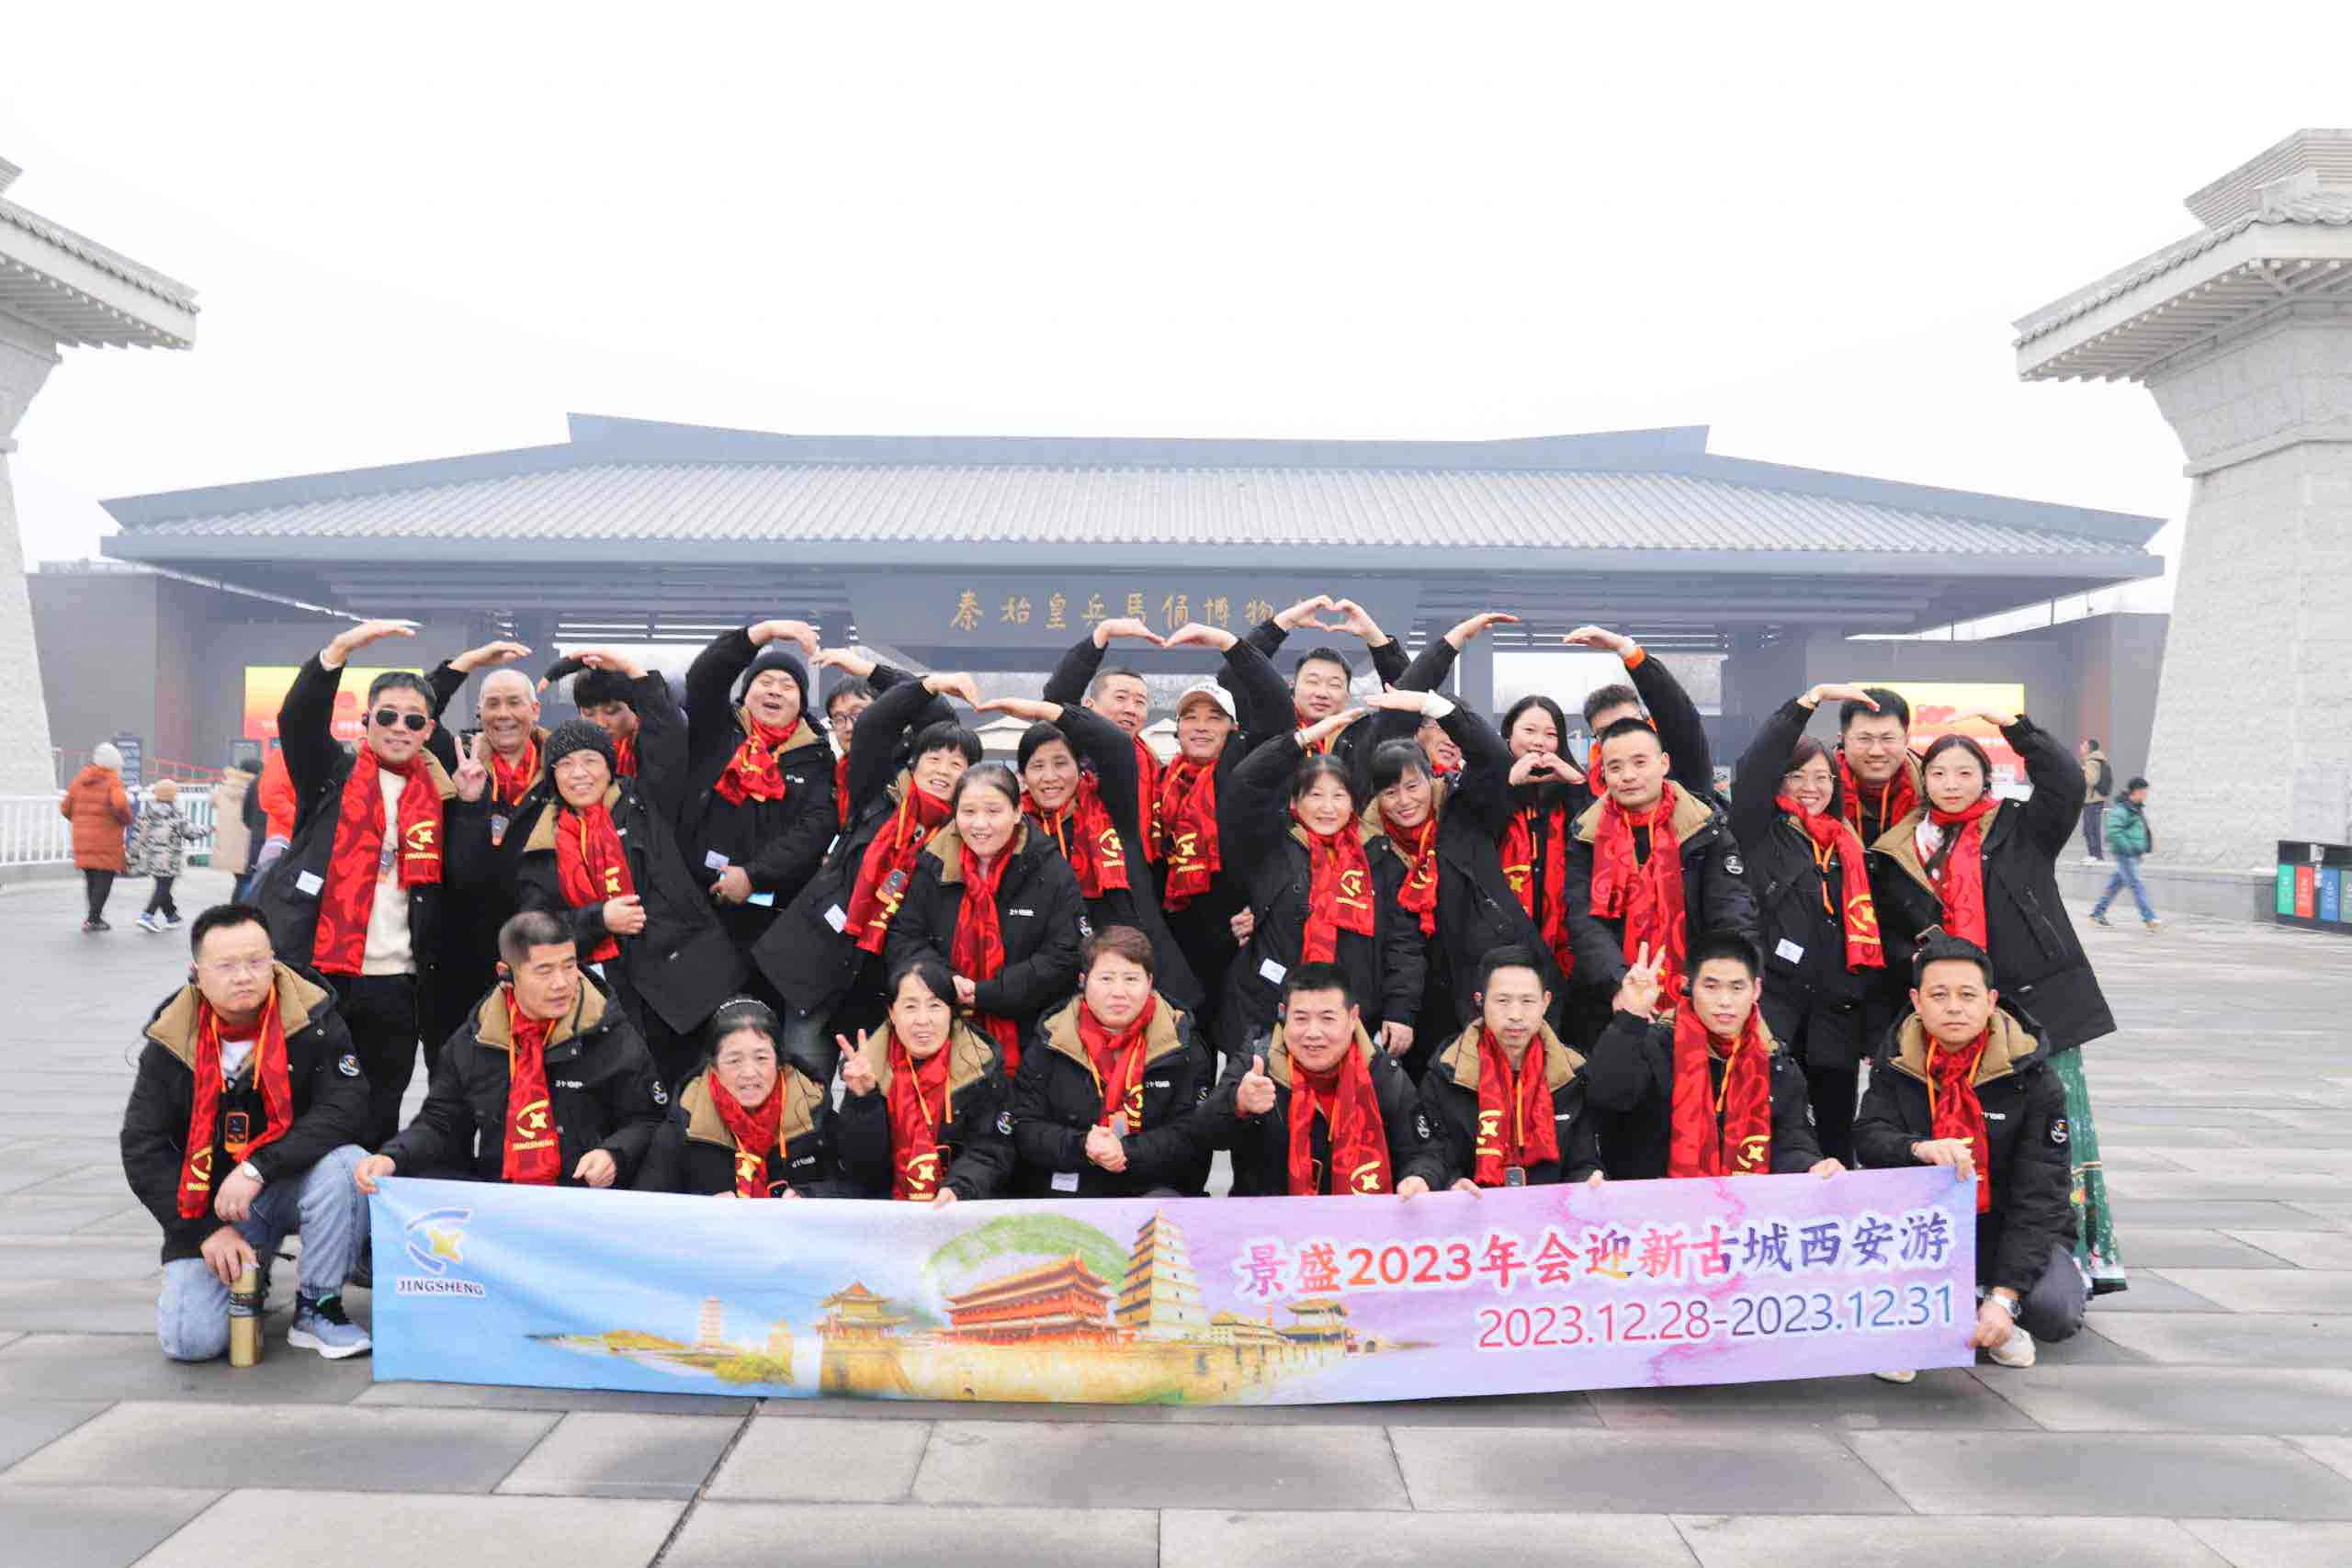 Los empleados de la empresa disfrutan del viaje a la ciudad de Xi'an